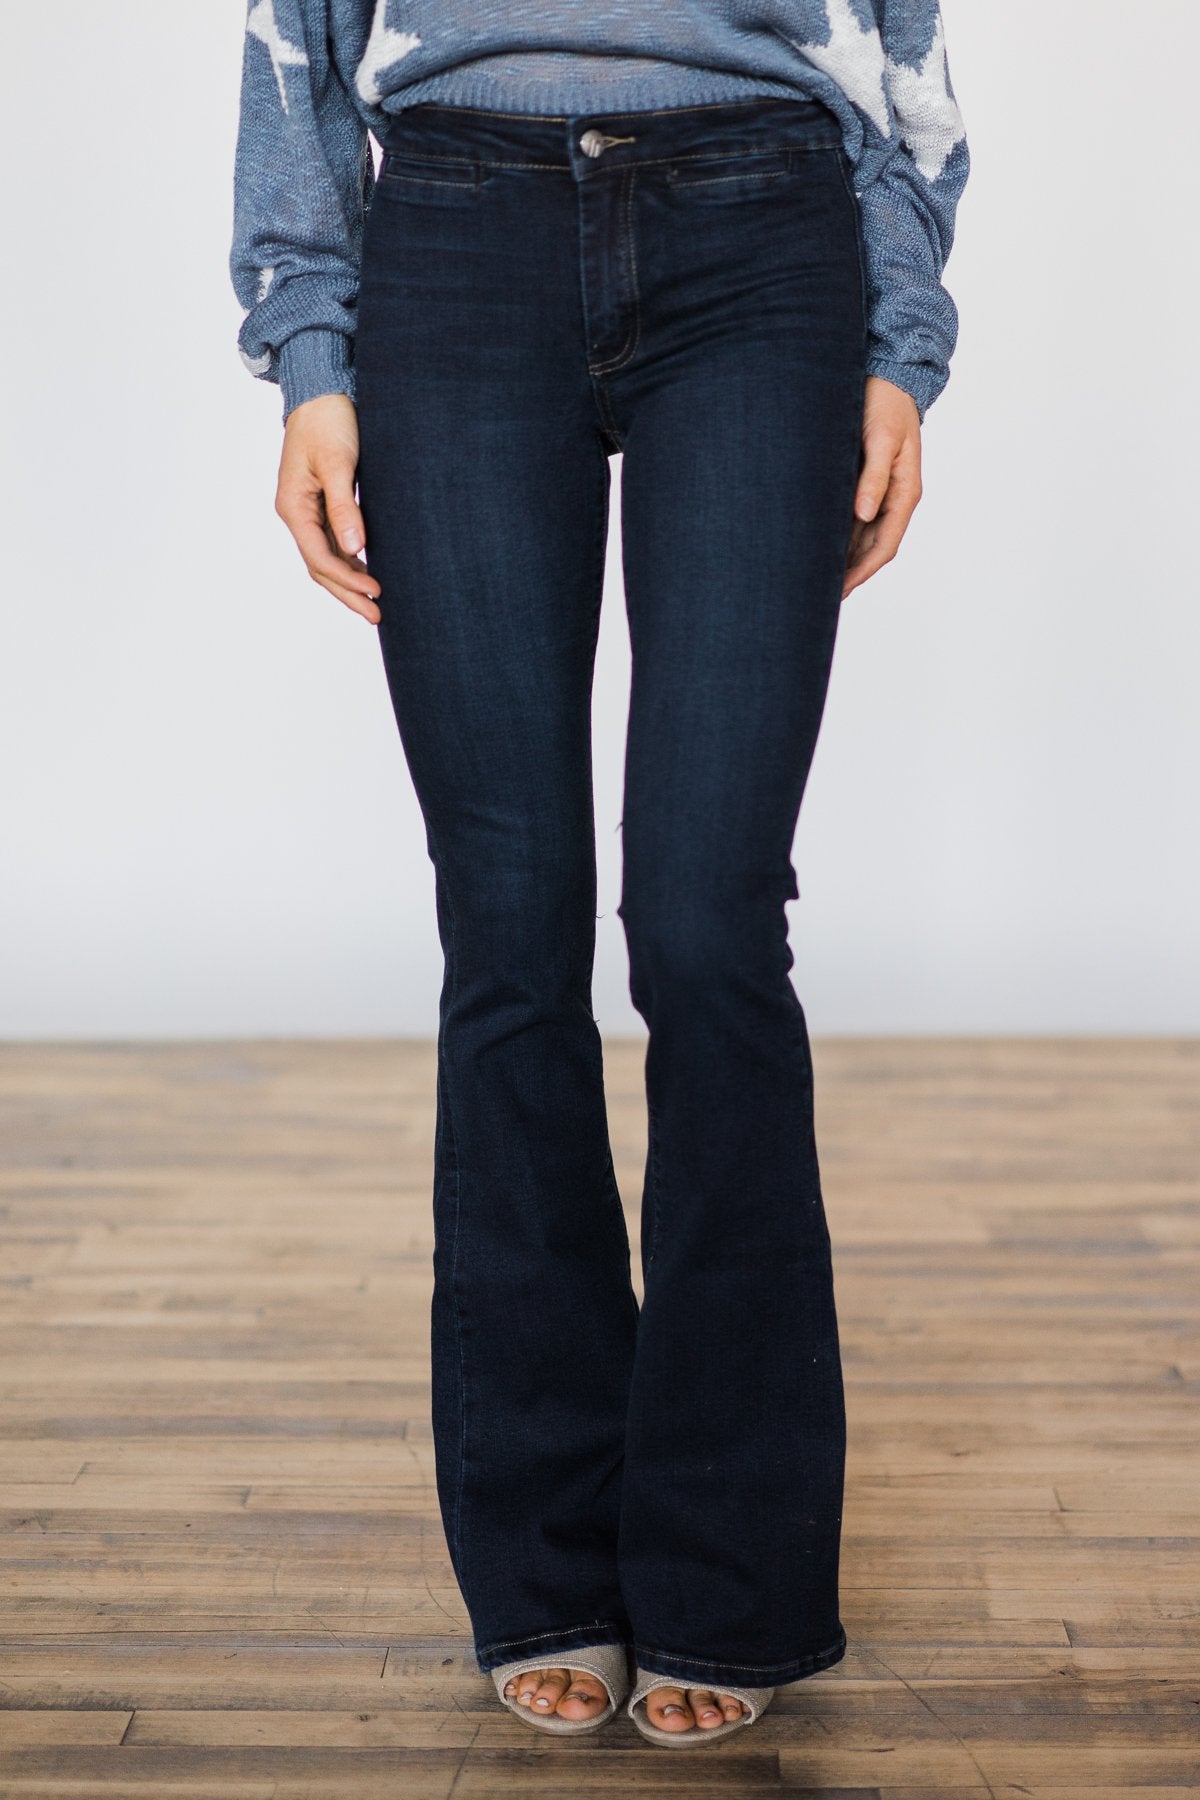 Tractr Blu Jeans ~ Joan Wash